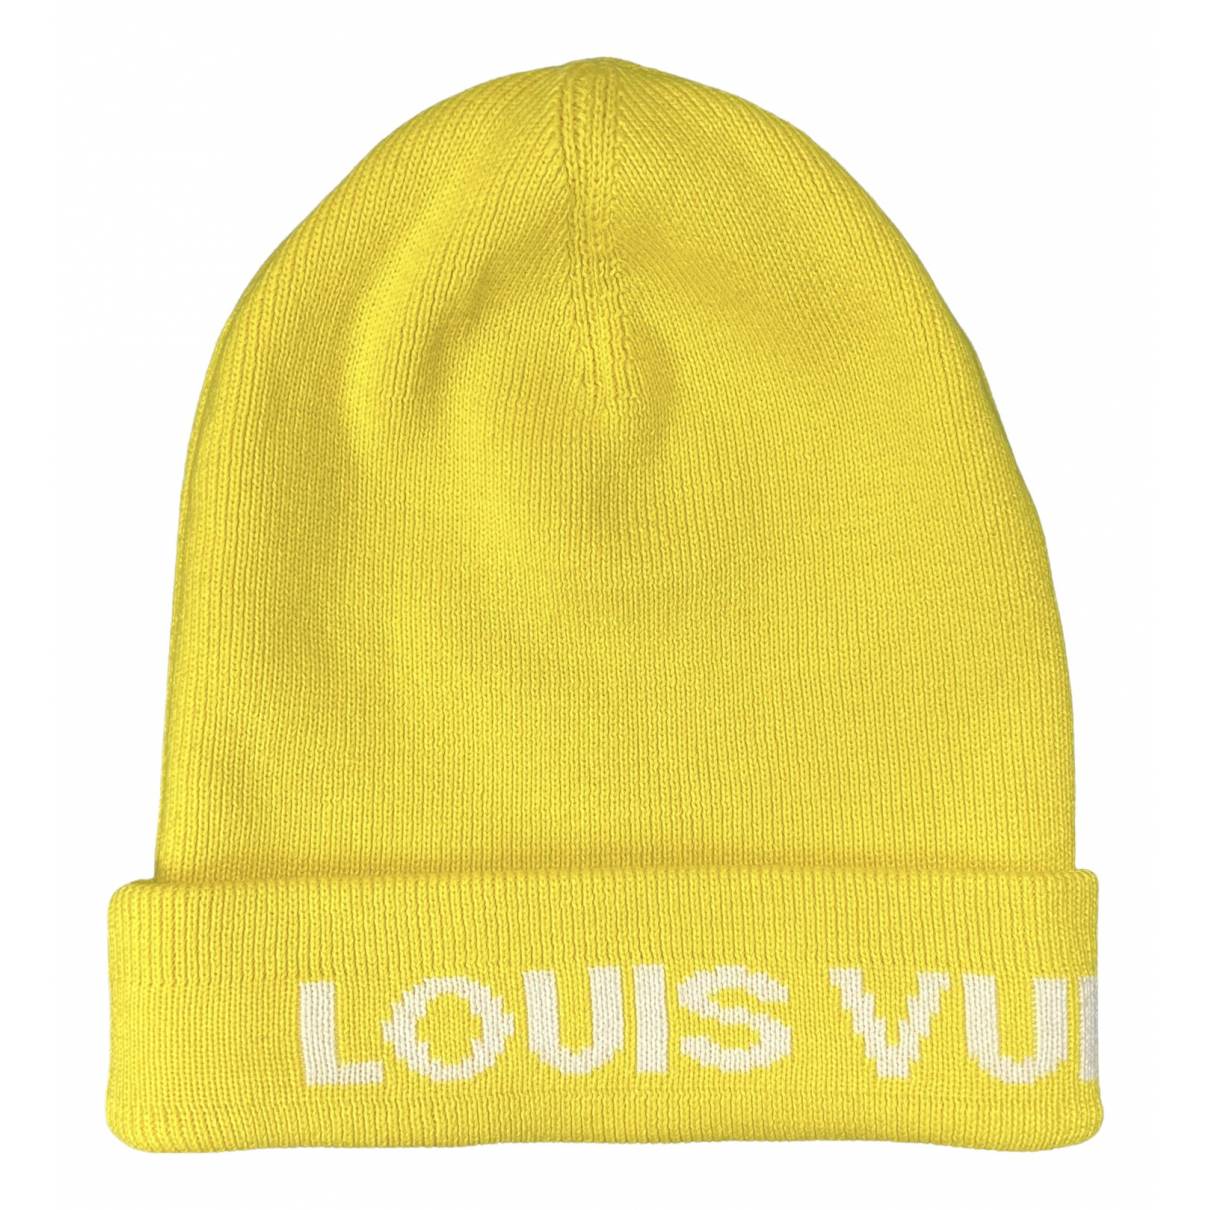 Louis Vuitton LV Monogram Bonnet Beanie Knit Cap Hat Wool Light Blue Auth